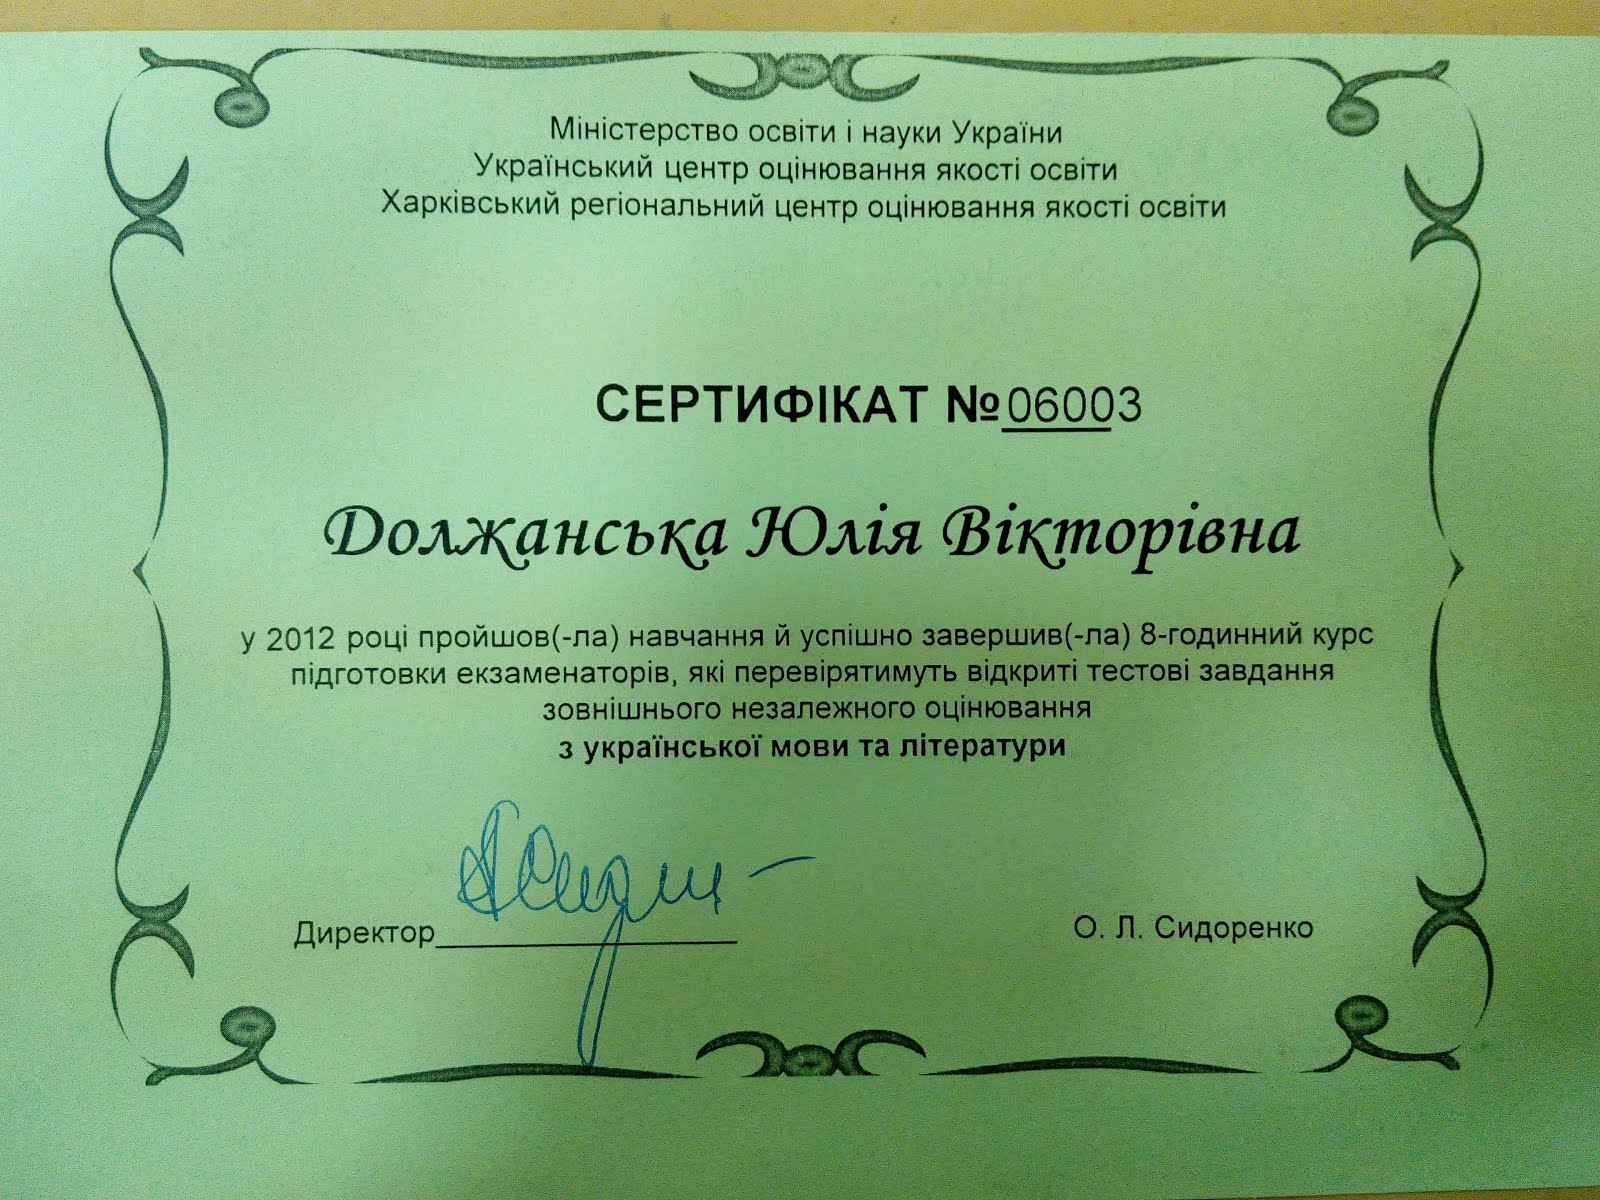 Сертифікат екзаменатора відкритої частини ЗНО з української мови та літератури